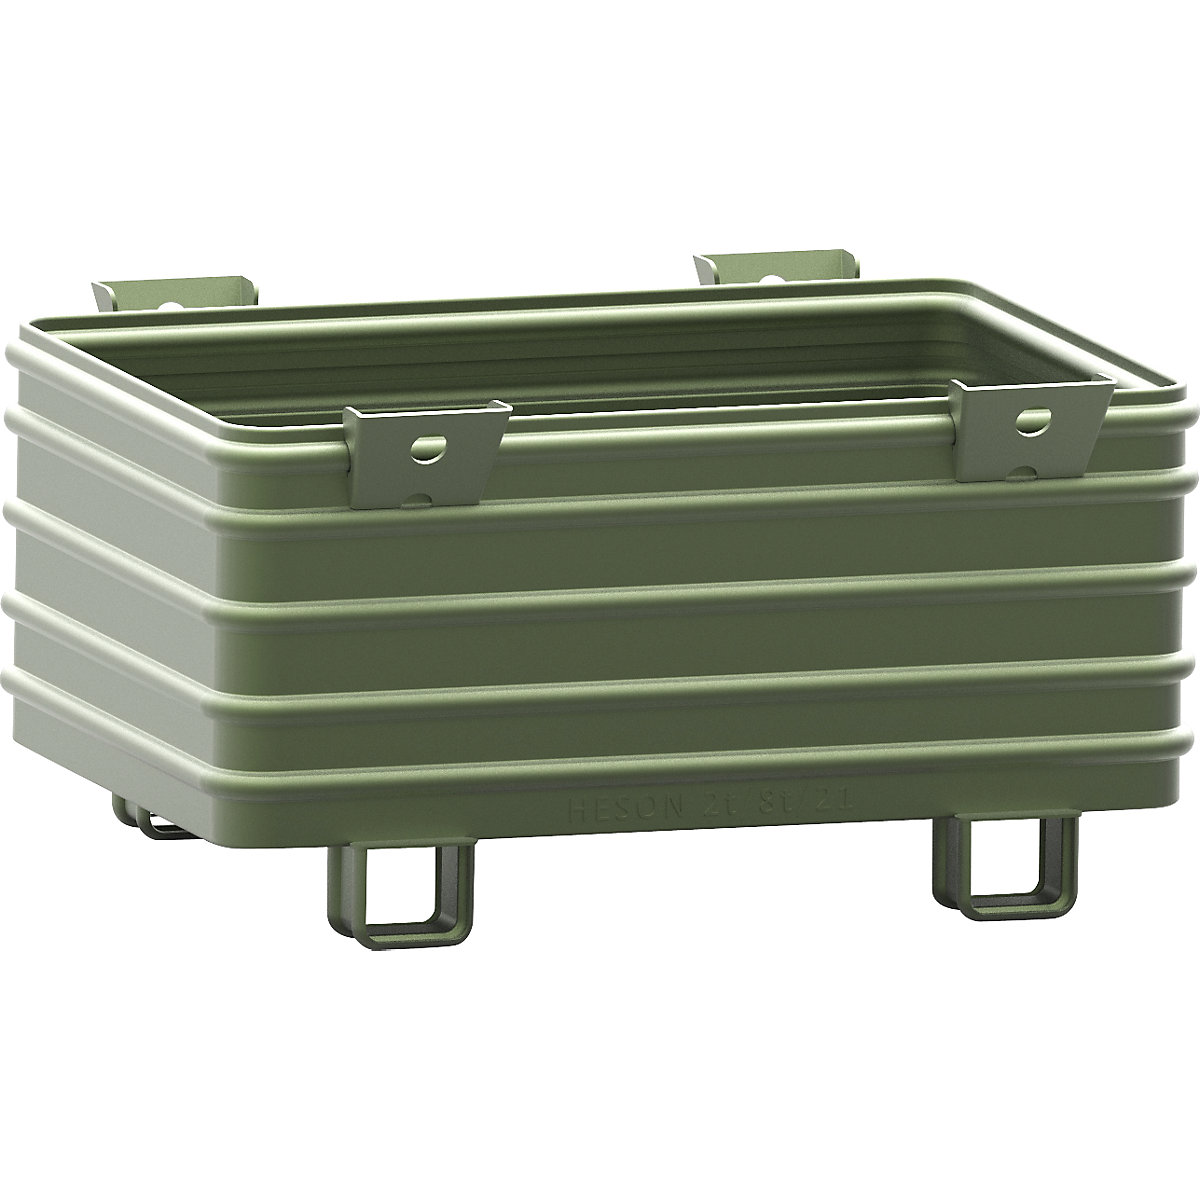 Heson Schwerlast-Stapelbehälter, BxL 800 x 1200 mm, mit U-förmigen Füßen, grün lackiert, ab 1 Stk